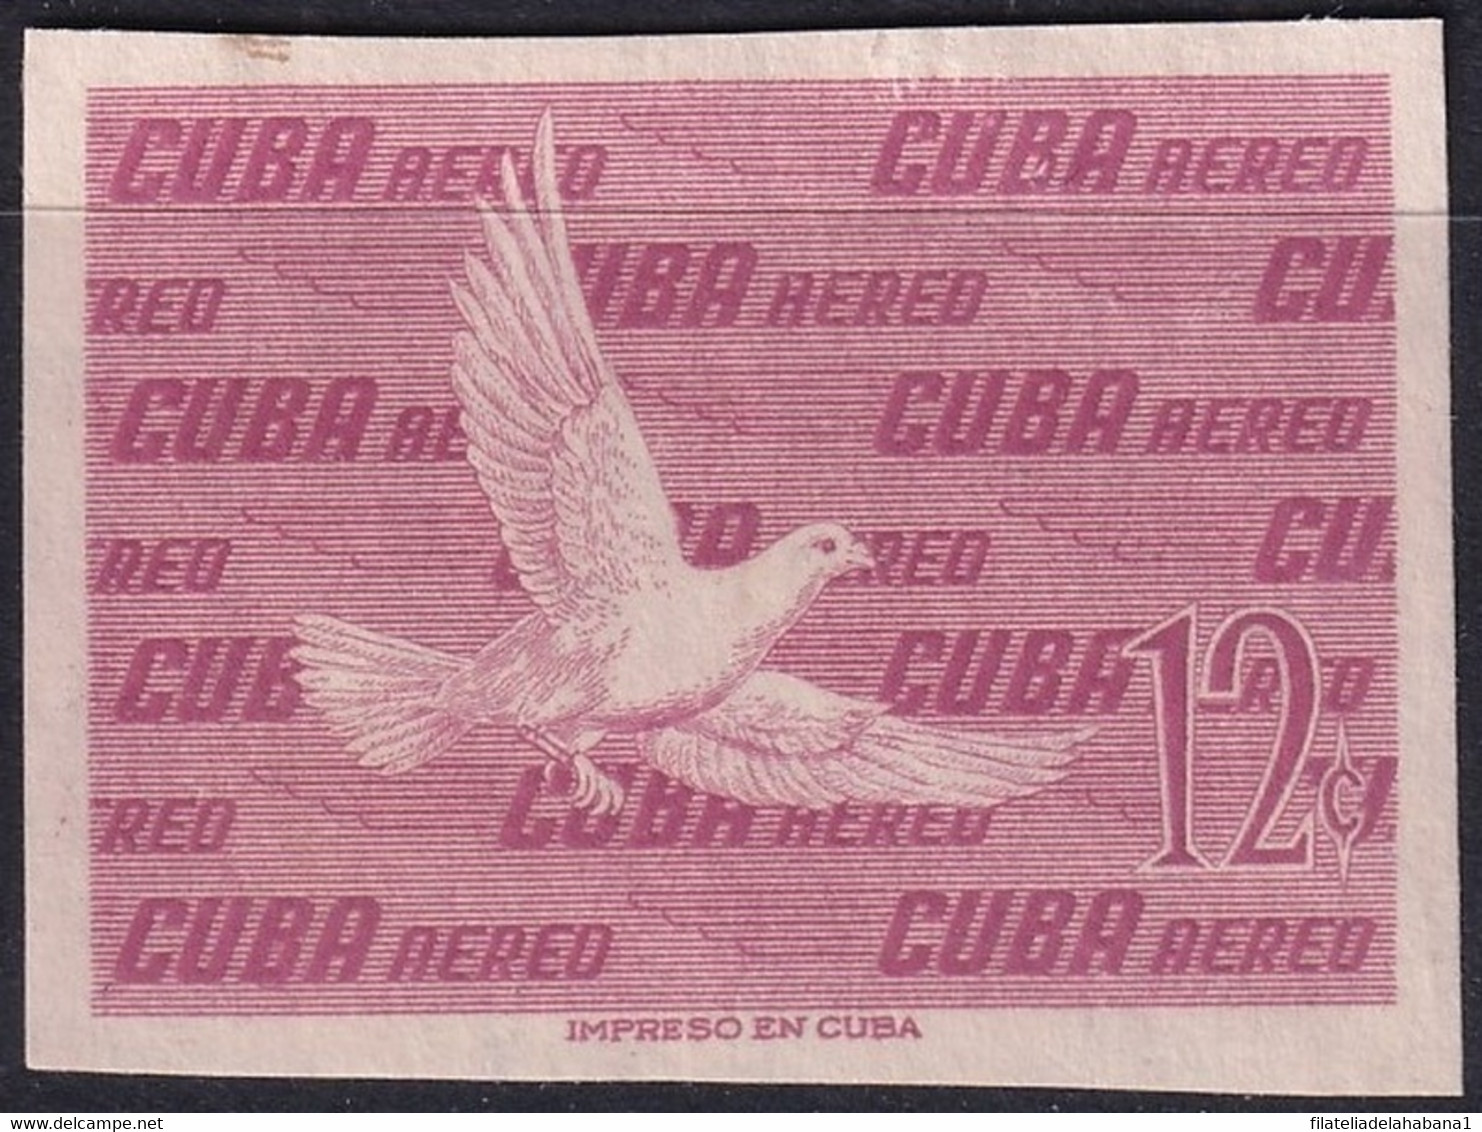 1956-427 CUBA REPUBLICA 1956 12c IMPERFORATED PROOF BIRD AVES PAJAROS. - Sin Dentar, Pruebas De Impresión Y Variedades